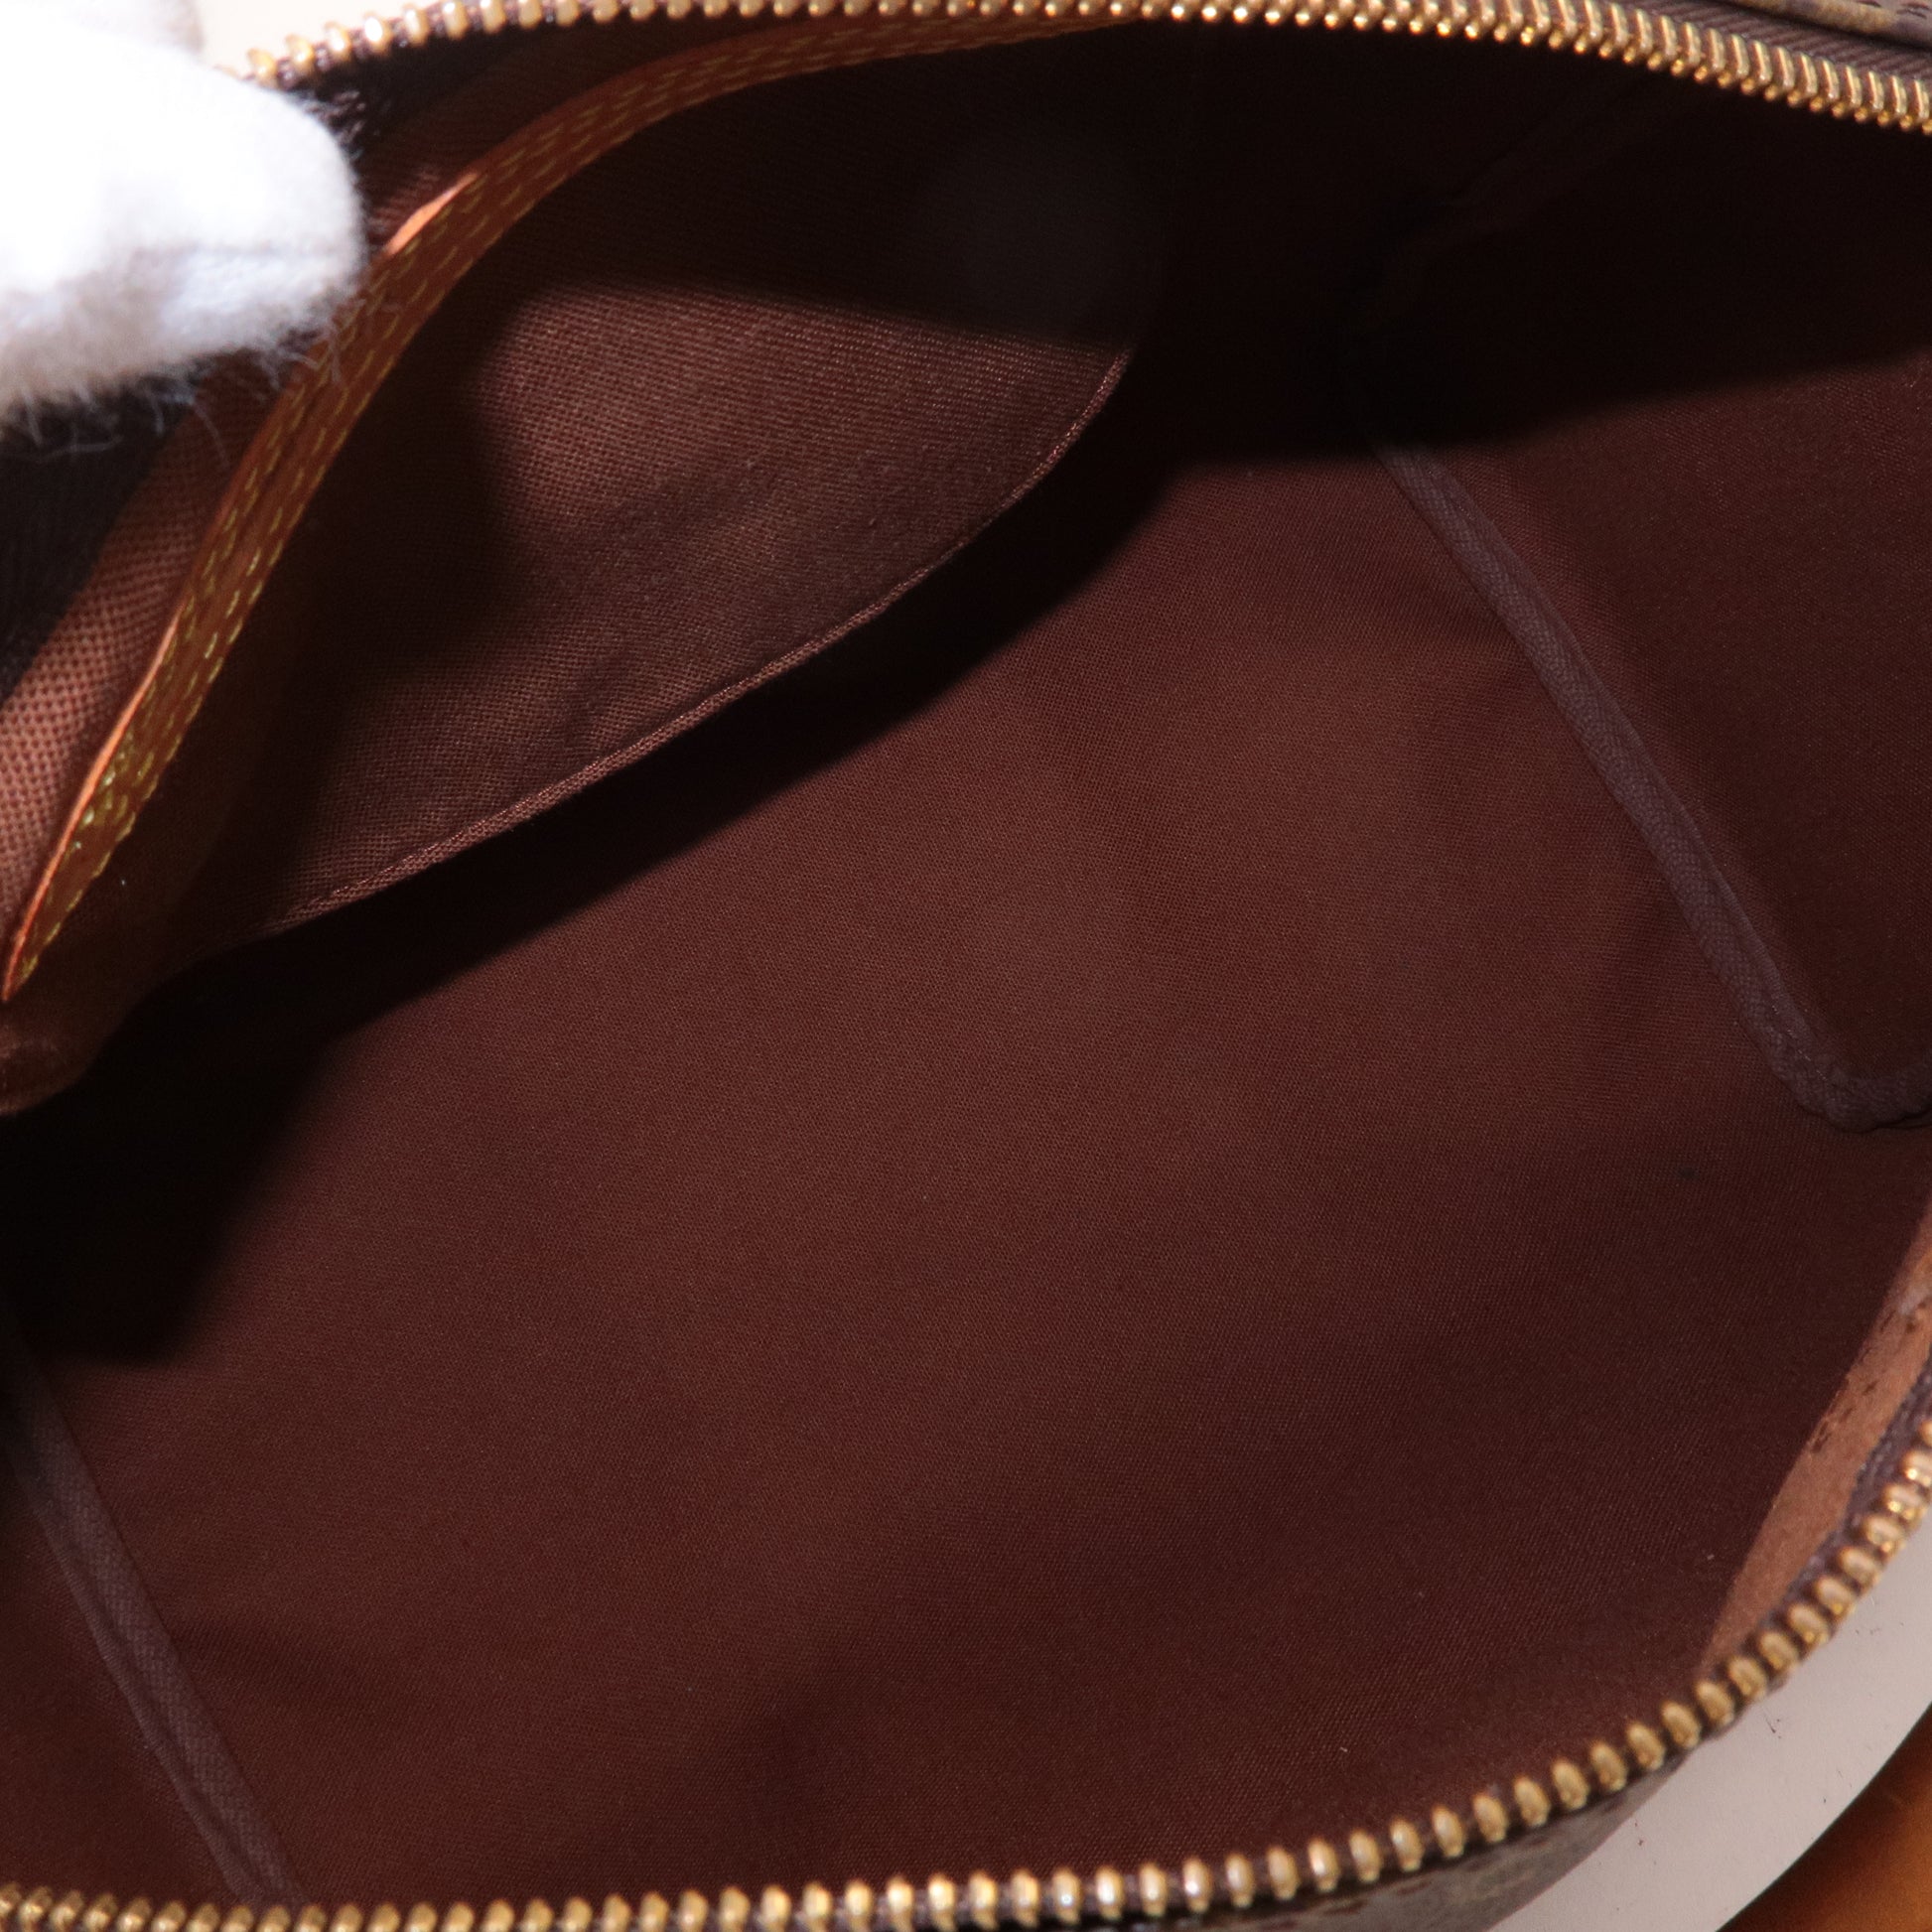 Louis-Vuitton Epi Speedy 30-Hand Boston Bag